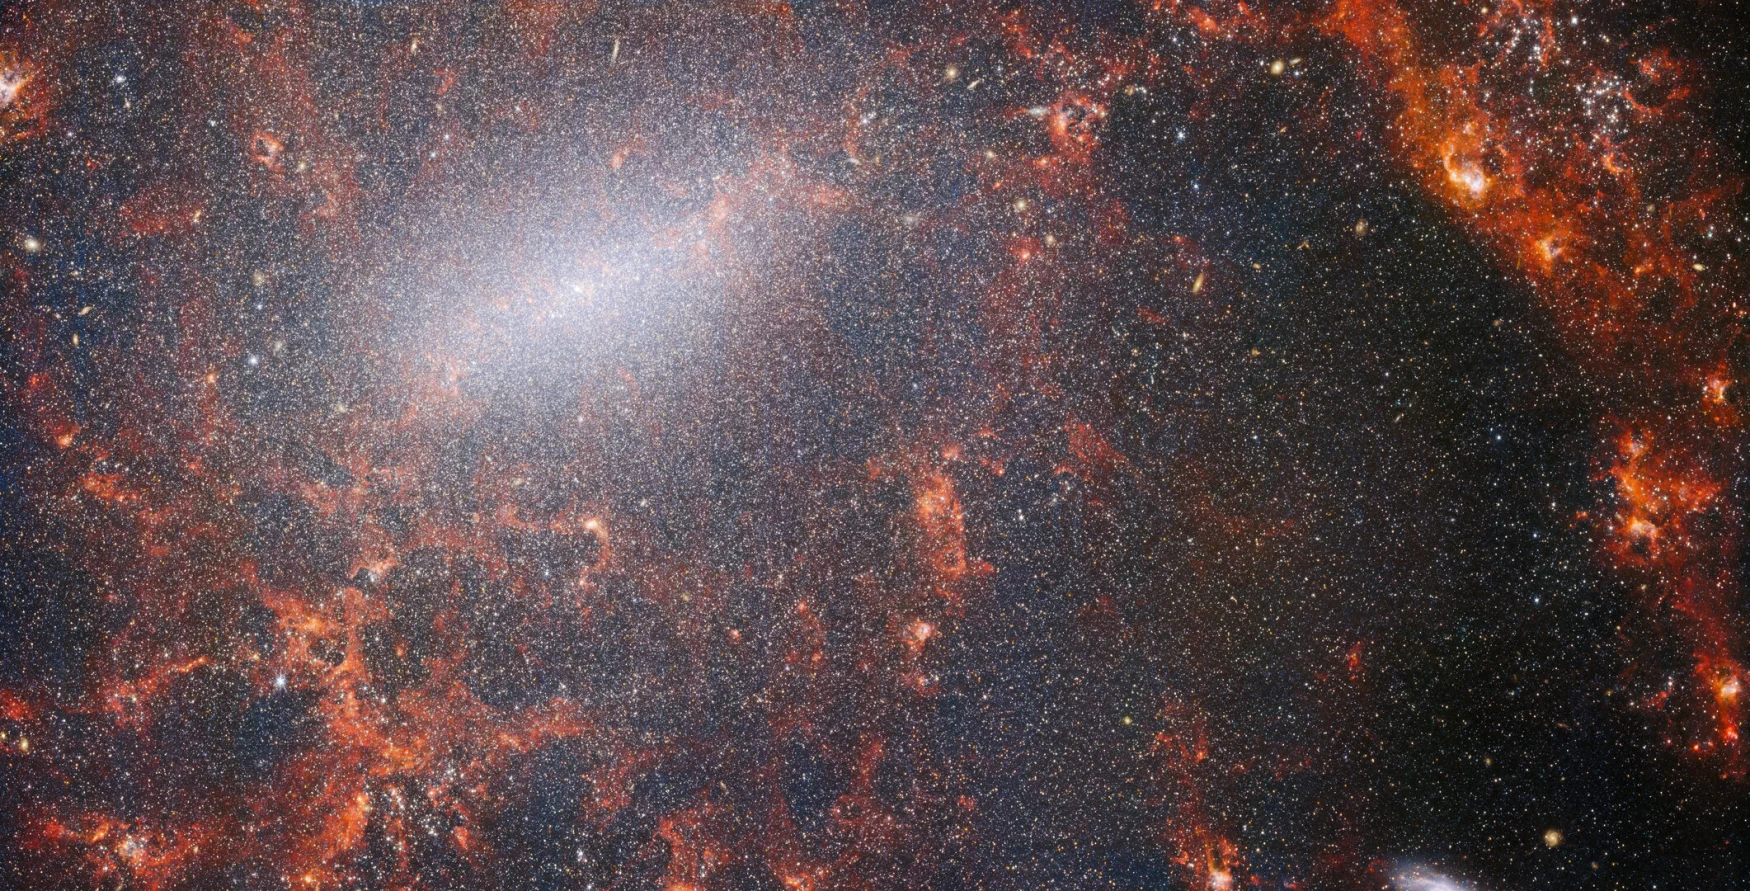 Šiame NASA/ESA/CSA James Webb kosminio teleskopo vaizde matomos smulkios dulkių gijos ir ryškios žvaigždžių spiečių.  Šis vaizdas iš Webb's NIRCam instrumento yra nusagstytas didžiuliu galaktikos žvaigždžių spiečiu, tankiausiai susitelkusiu išilgai ryškios centrinės juostos, kartu su liepsnojančiais raudonais dujų debesimis, apšviestais jaunų žvaigždžių viduje.  Šios mirksinčios žvaigždės priklauso spiralinei galaktikai NGC 5068, kuri yra maždaug 17 milijonų šviesmečių nuo Žemės Mergelės žvaigždyne.  Šis NGC 5068 vaizdas yra kampanijos dalis, kuria siekiama sukurti astronomijos lobį – žvaigždžių formavimosi netoliese esančiose galaktikose stebėjimų saugyklą.  Ankstesnius šios kolekcijos brangakmenius galite pamatyti čia ir čia.  Šie stebėjimai ypač vertingi astronomams dėl dviejų priežasčių.  Pirma, žvaigždžių formavimasis yra daugelio astronomijos sričių pagrindas – nuo ​​silpnų tarpžvaigždinių plazmų fizikos iki ištisų galaktikų evoliucijos.  Stebėdami žvaigždžių formavimąsi netoliese esančiose galaktikose, astronomai tikisi pradėti didelę mokslinę pažangą, turėdami pirmuosius Webb duomenis.  Antroji priežastis yra ta, kad Webb stebėjimai pagrįsti kitais tyrimais, naudojant teleskopus, įskaitant NASA/ESA Hablo kosminį teleskopą ir kai kurias pajėgiausias antžemines observatorijas pasaulyje.  Webbas surinko 19 netoliese esančių žvaigždžių formavimo galaktikų nuotraukas, kurias astronomai vėliau sugebėjo sujungti su Hablo 10 000 žvaigždžių spiečių katalogais, spektriniu būdu sudarė 20 000 žvaigždžių emisijos ūkų iš Very Large Telescope (VLT) ir stebėjo 12 000 iš tamsių ūkų.  , tankūs molekuliniai debesys, identifikuoti pagal Atakamos didelio milimetrų / submilimetrų masyvą (ALMA).  Šie stebėjimai apima elektromagnetinį spektrą ir suteikia astronomams precedento neturinčią galimybę sujungti žvaigždžių formavimosi detales.  Šis beveik infraraudonųjų spindulių galaktikos vaizdas užpildytas didžiuliu senovinių žvaigždžių spiečiu, kuris sudaro NGC 5068 šerdį. NIRCam ryškus vaizdas leidžia astronomams žiūrėti pro galaktikos dujas ir dulkes, kad galėtų atidžiau ištirti jos žvaigždes.  Išilgai spiralės atšakų driekiasi tankūs, ryškūs dulkių debesys: tai H II sritys, vandenilio dujų sankaupos, kuriose formuojasi naujos žvaigždės.  Aktyvios, energingos žvaigždės jonizuoja aplink jas esantį vandenilį, kuris kartu su karštų dulkių emisija sukuria tą rausvą švytėjimą.  H II regionai yra puikus astronomų taikinys, o Webb instrumentai yra puikus įrankis jiems tirti, todėl susidaro toks vaizdas. [Image Description: A close-in image of a spiral galaxy, showing its core and part of a spiral arm. At this distance thousands upon thousands of tiny stars that make up the galaxy can be seen. The stars are most dense in a whitish bar that forms the core, and less dense out from that towards the arm. Bright red gas clouds follow the twist of the galaxy and the spiral arm.] Nuorodos NGC 5068 (NIRCam + MIRI vaizdas) 